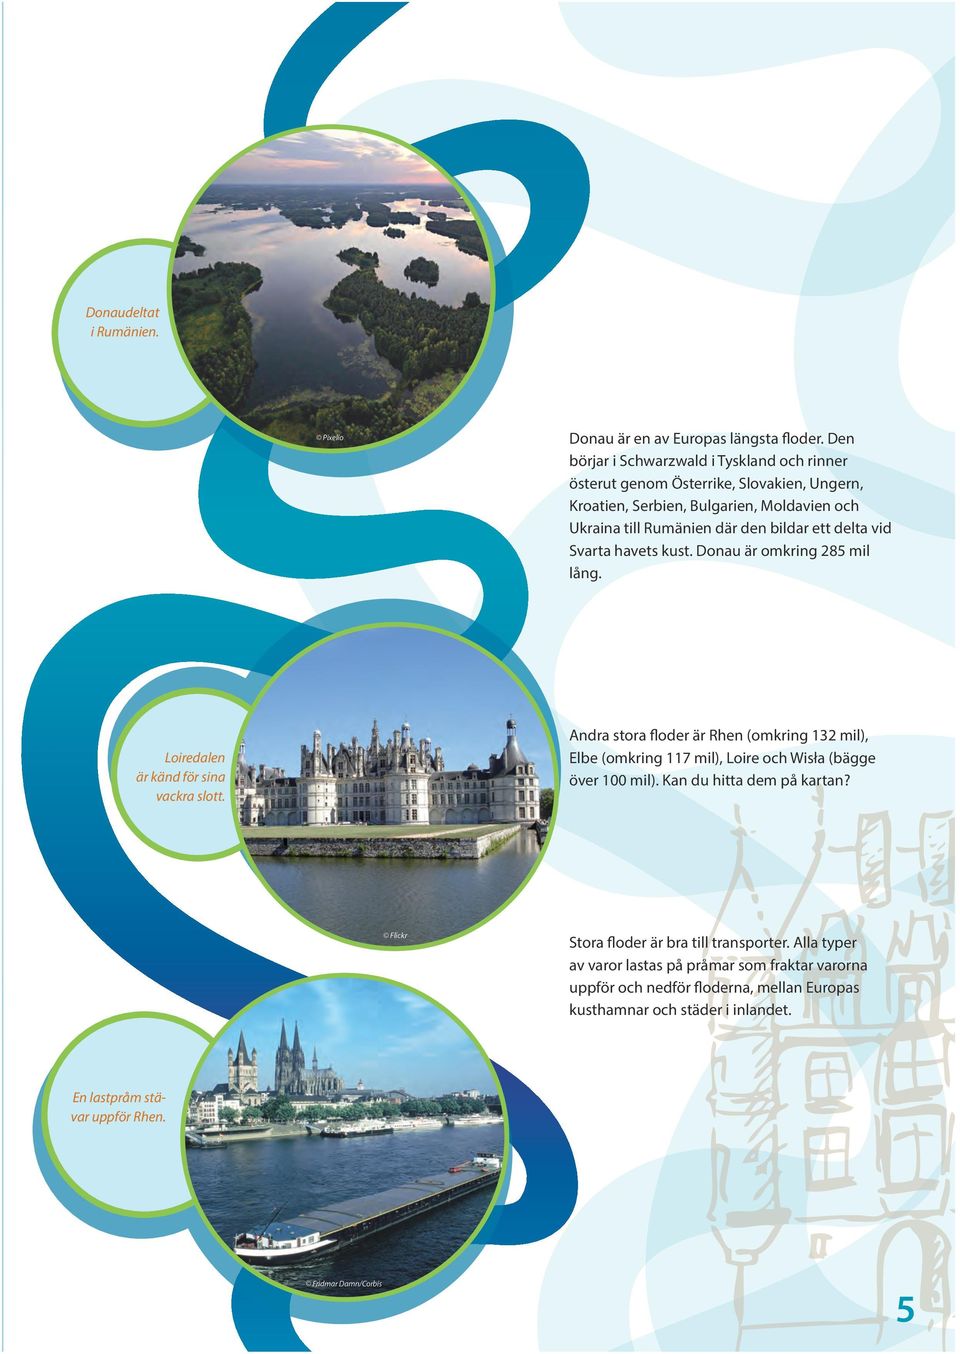 delta vid Svarta havets kust. Donau är omkring 285 mil lång. Loiredalen är känd för sina vackra slott.